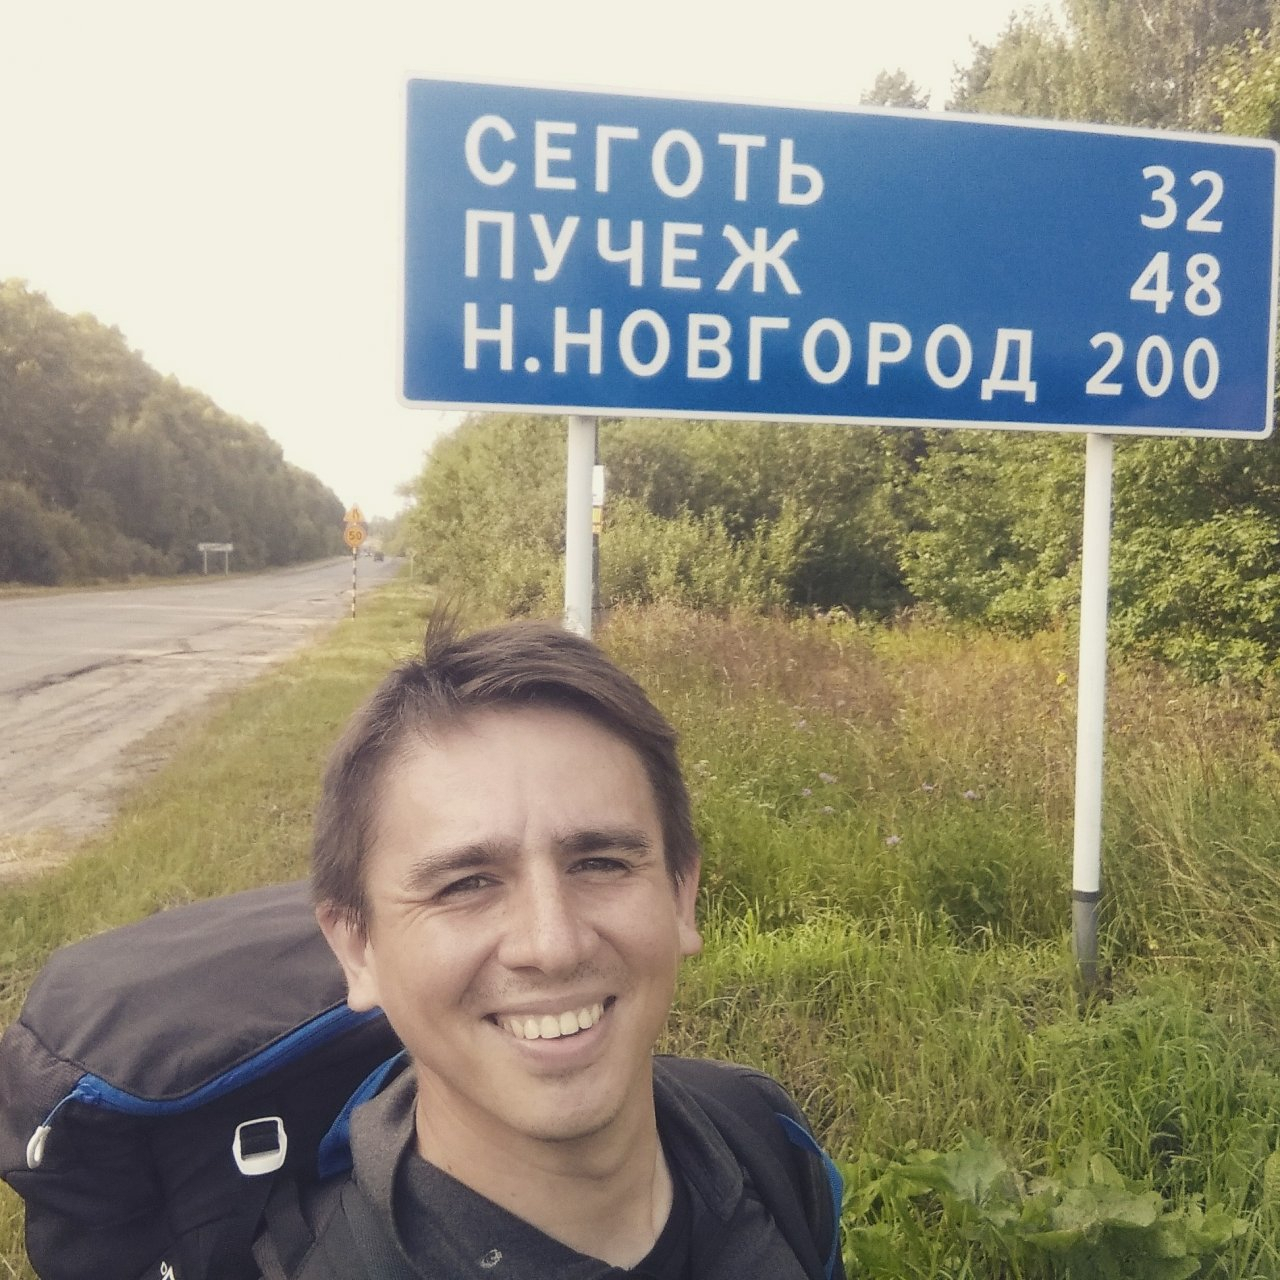 Путешественник Евгений Кутузов идет пешком в Индию через Нижний Новгород